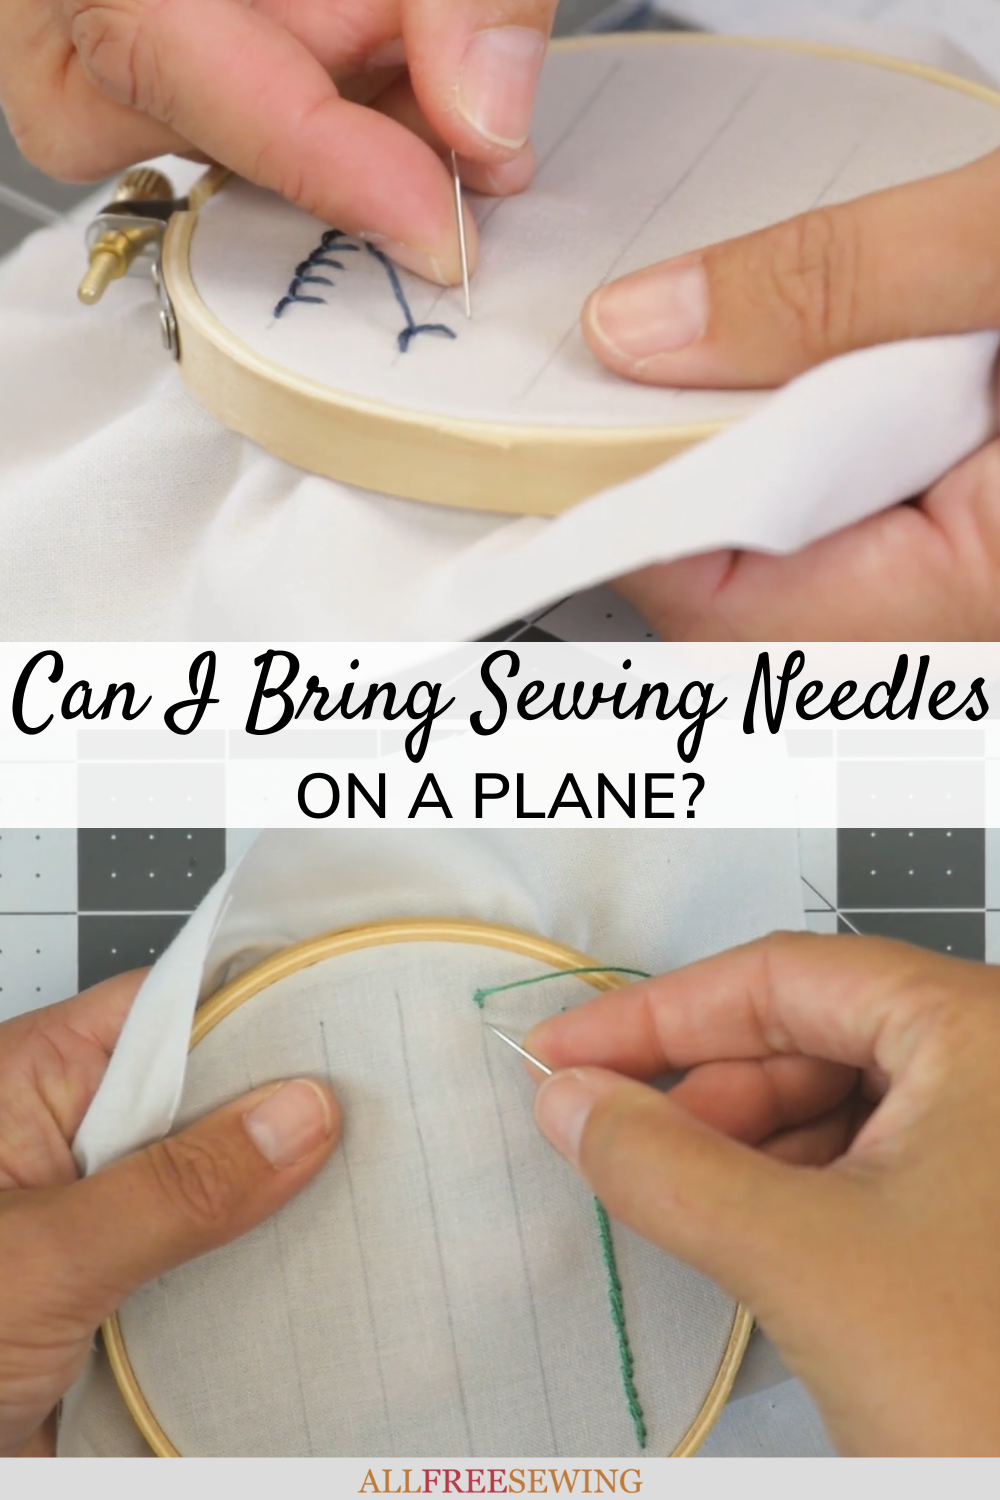 TSA Approved Scissors - The Flying Needles